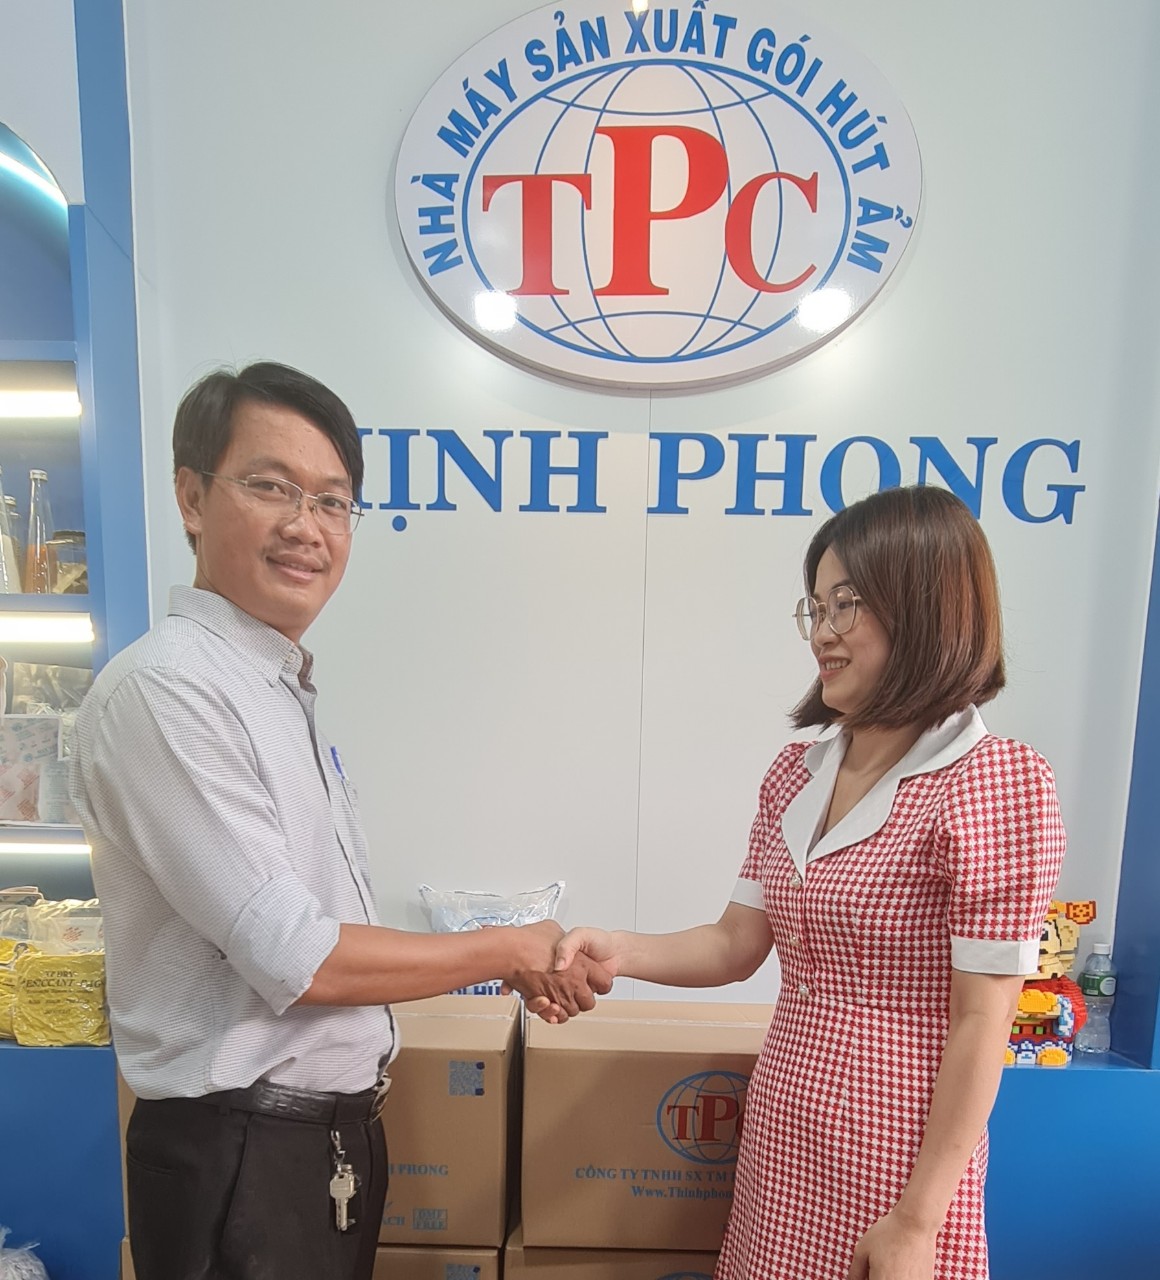 CEO Thịnh Phong Corporation